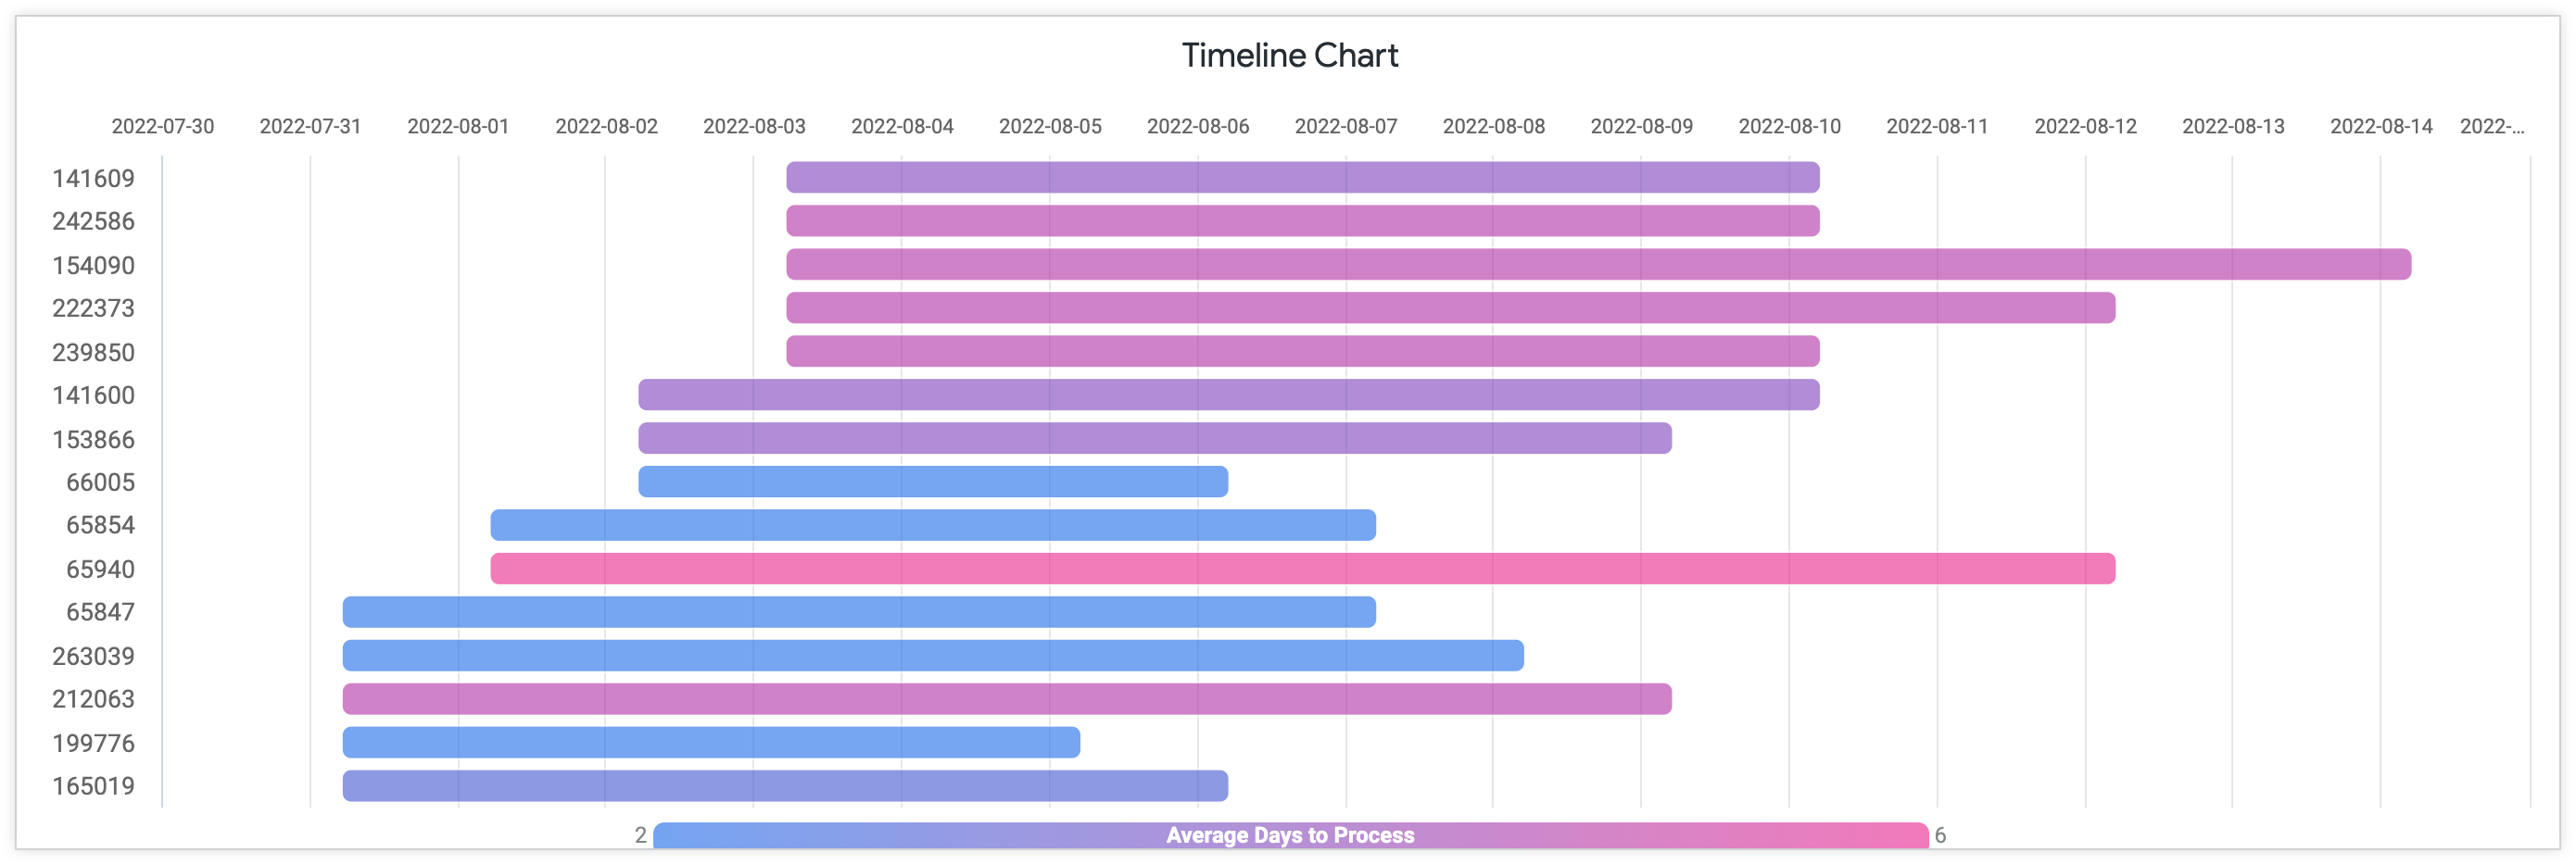 Graphique chronologique indiquant le nombre moyen de jours de traitement avec l'ID de commande sur l'axe Y et les jours entre juillet et août 2022 sur l'axe X.